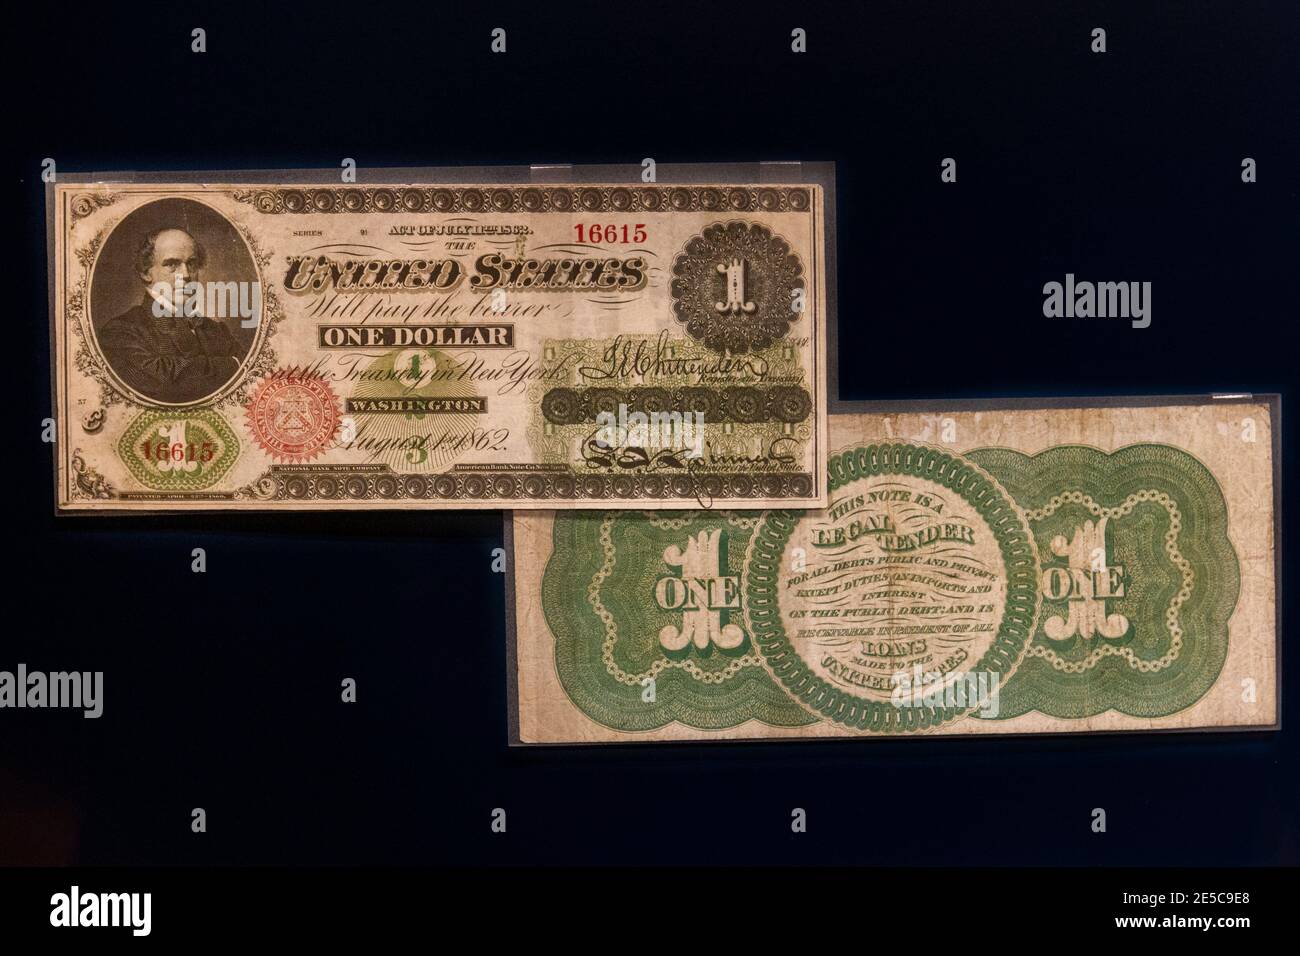 Un billet d'un dollar du Trésor américain (1862), le premier billet vert avec une empreinte verte à l'arrière, The Money Gallery, Ashmolean Museum, Oxford, Royaume-Uni. Banque D'Images